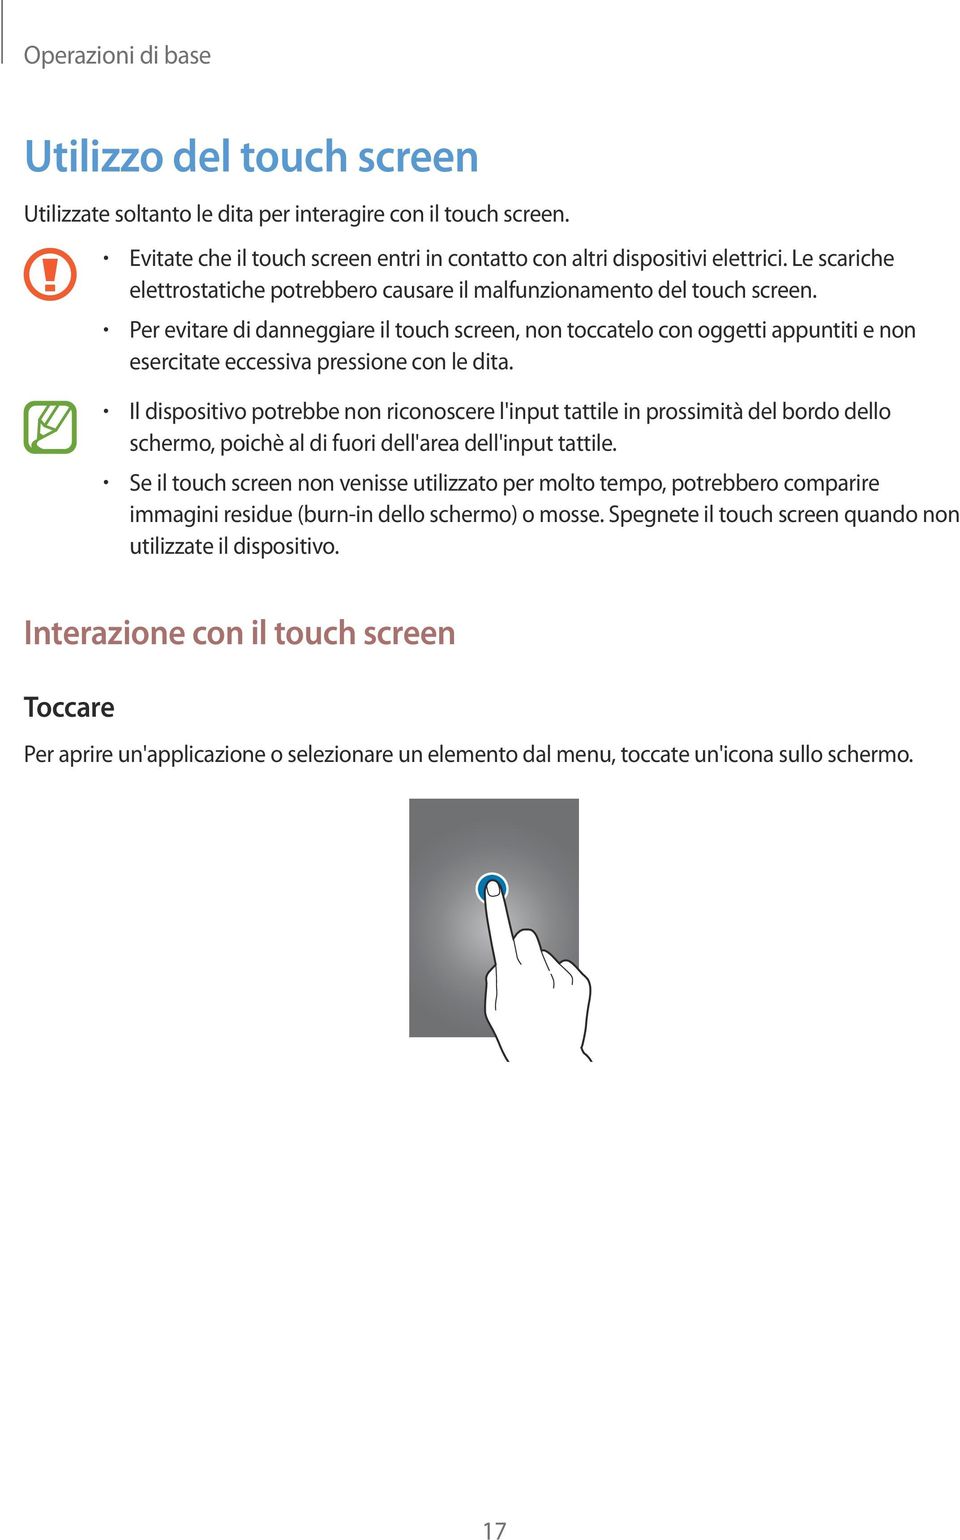 Per evitare di danneggiare il touch screen, non toccatelo con oggetti appuntiti e non esercitate eccessiva pressione con le dita.